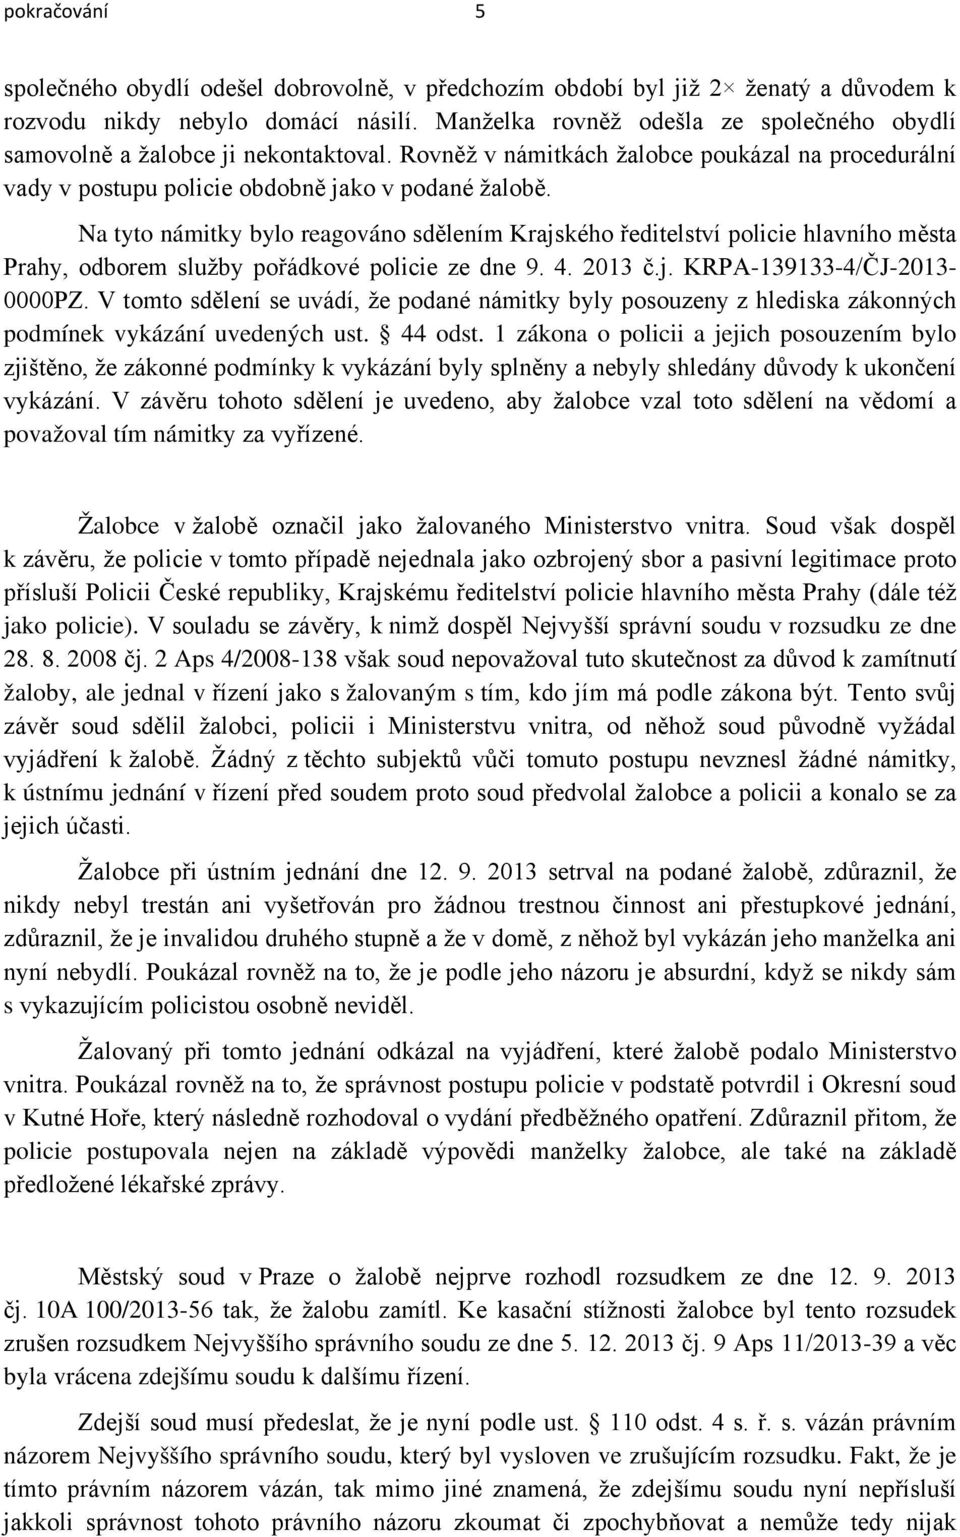 Na tyto námitky bylo reagováno sdělením Krajského ředitelství policie hlavního města Prahy, odborem služby pořádkové policie ze dne 9. 4. 2013 č.j. KRPA-139133-4/ČJ-2013-0000PZ.